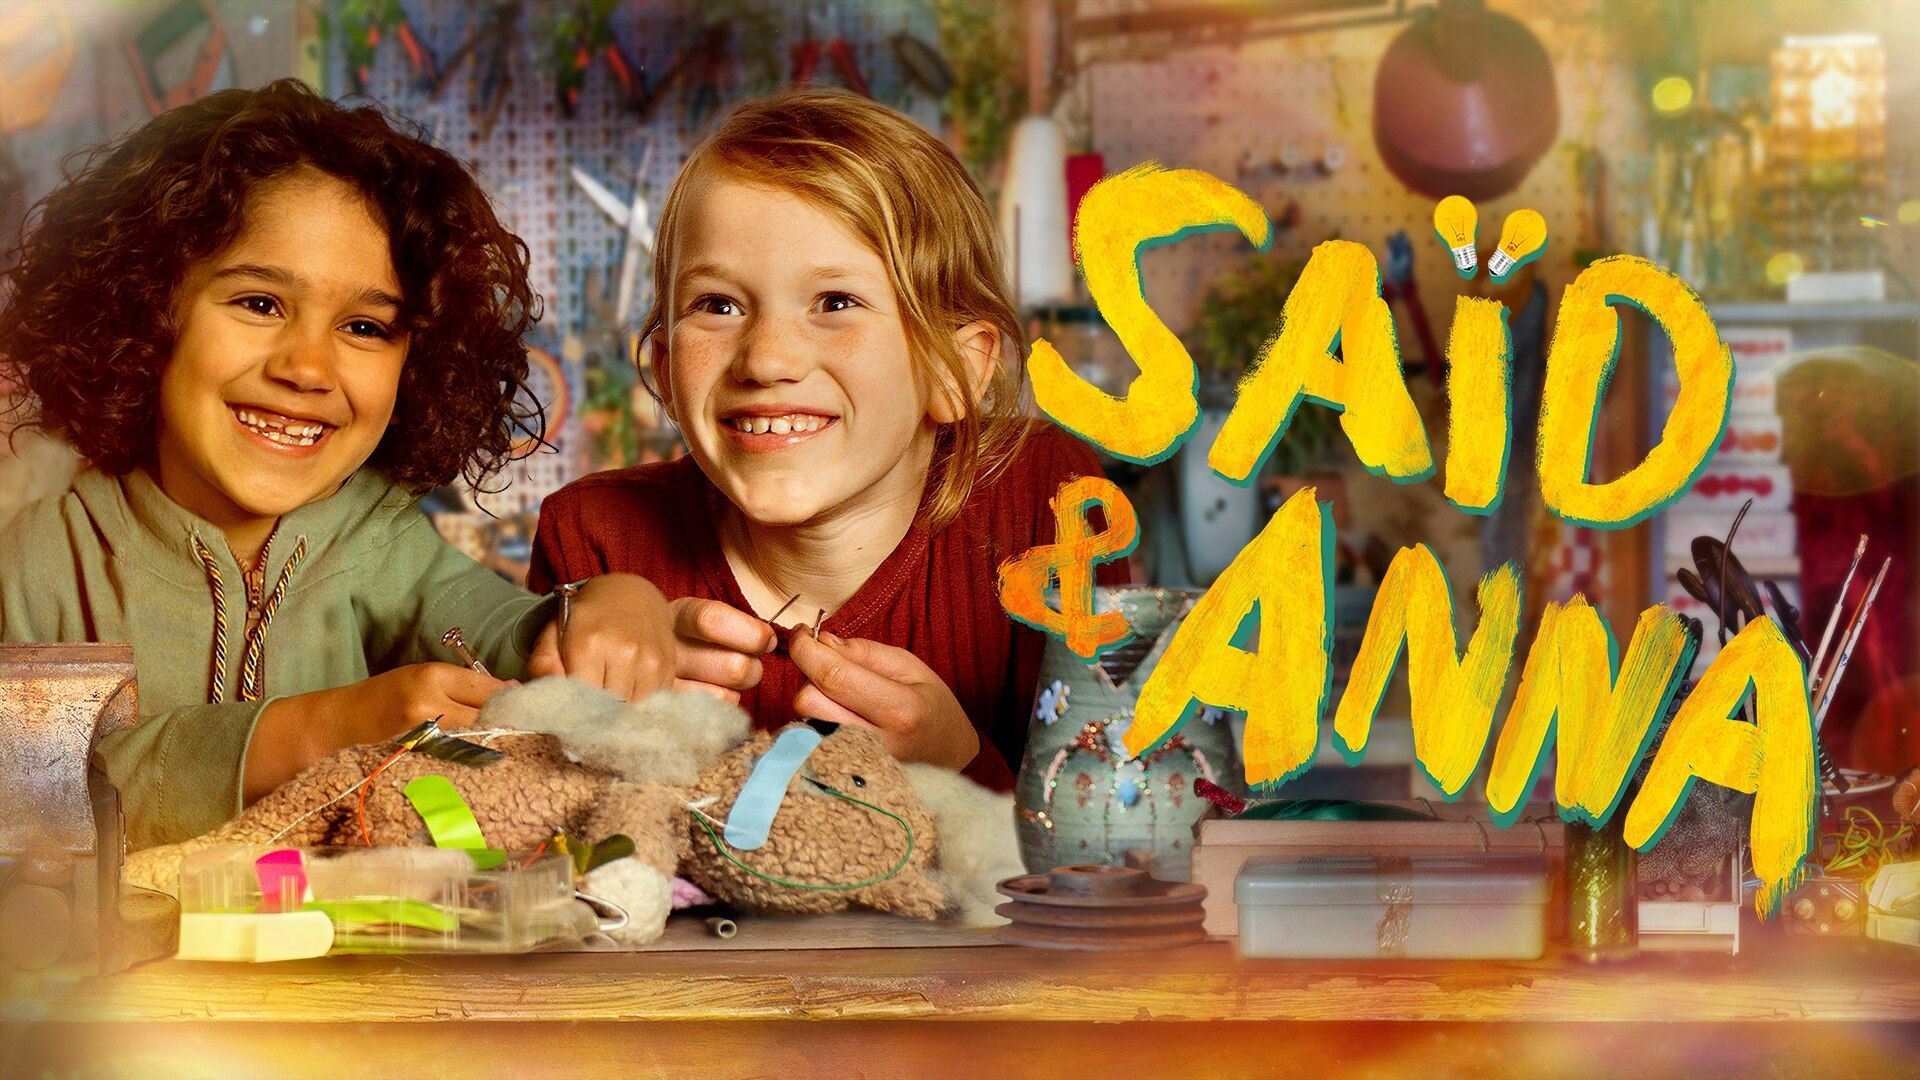 Saïd und Anna